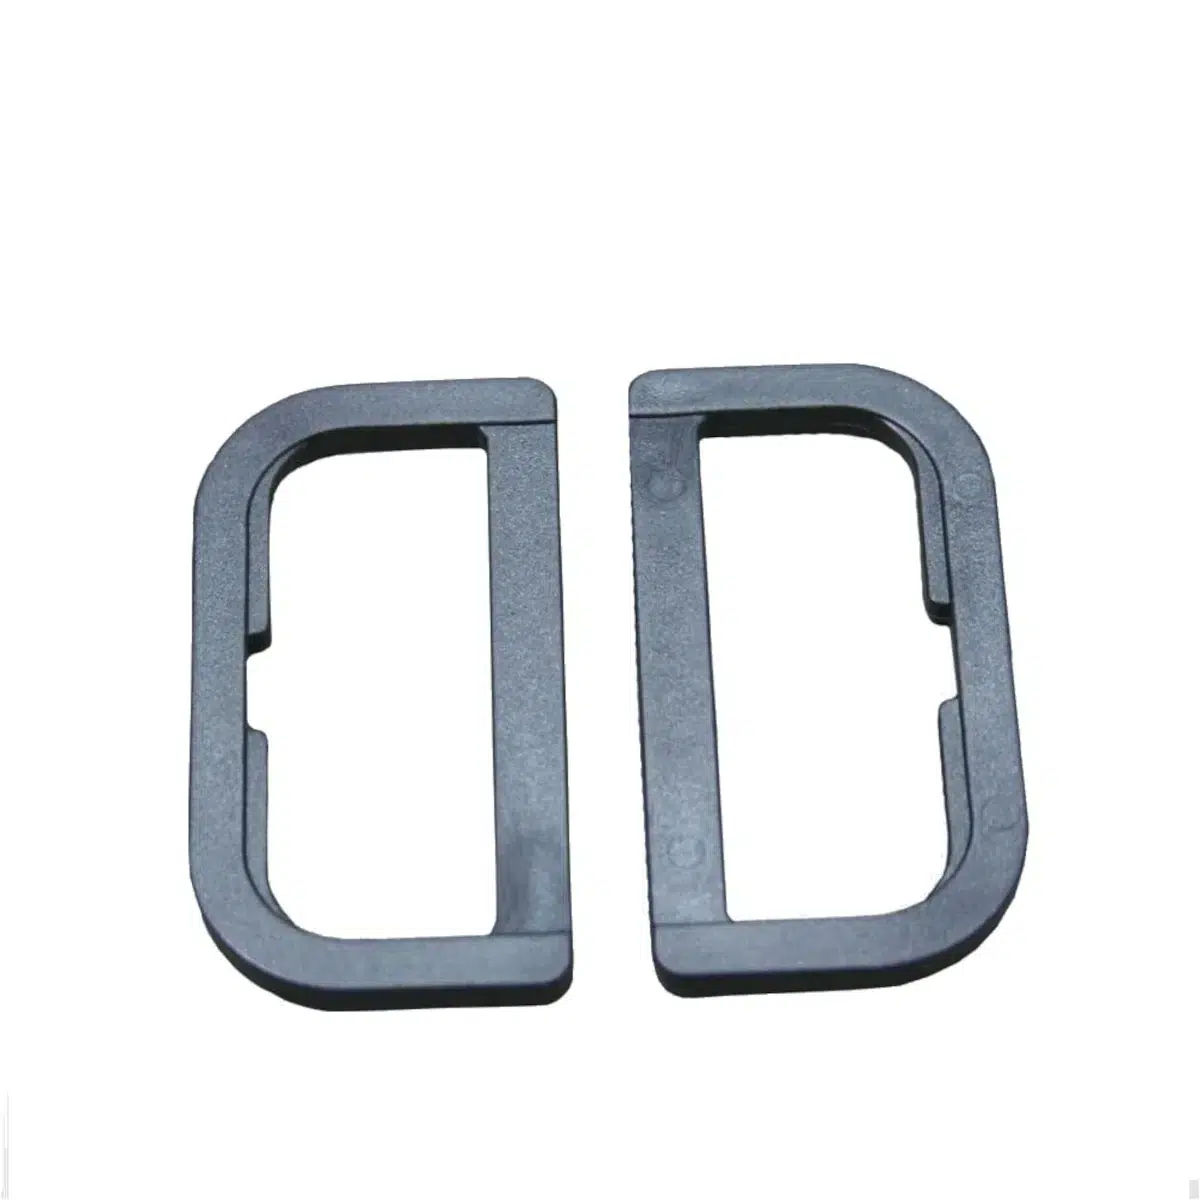 Tentco D Ring 50mm Plastic